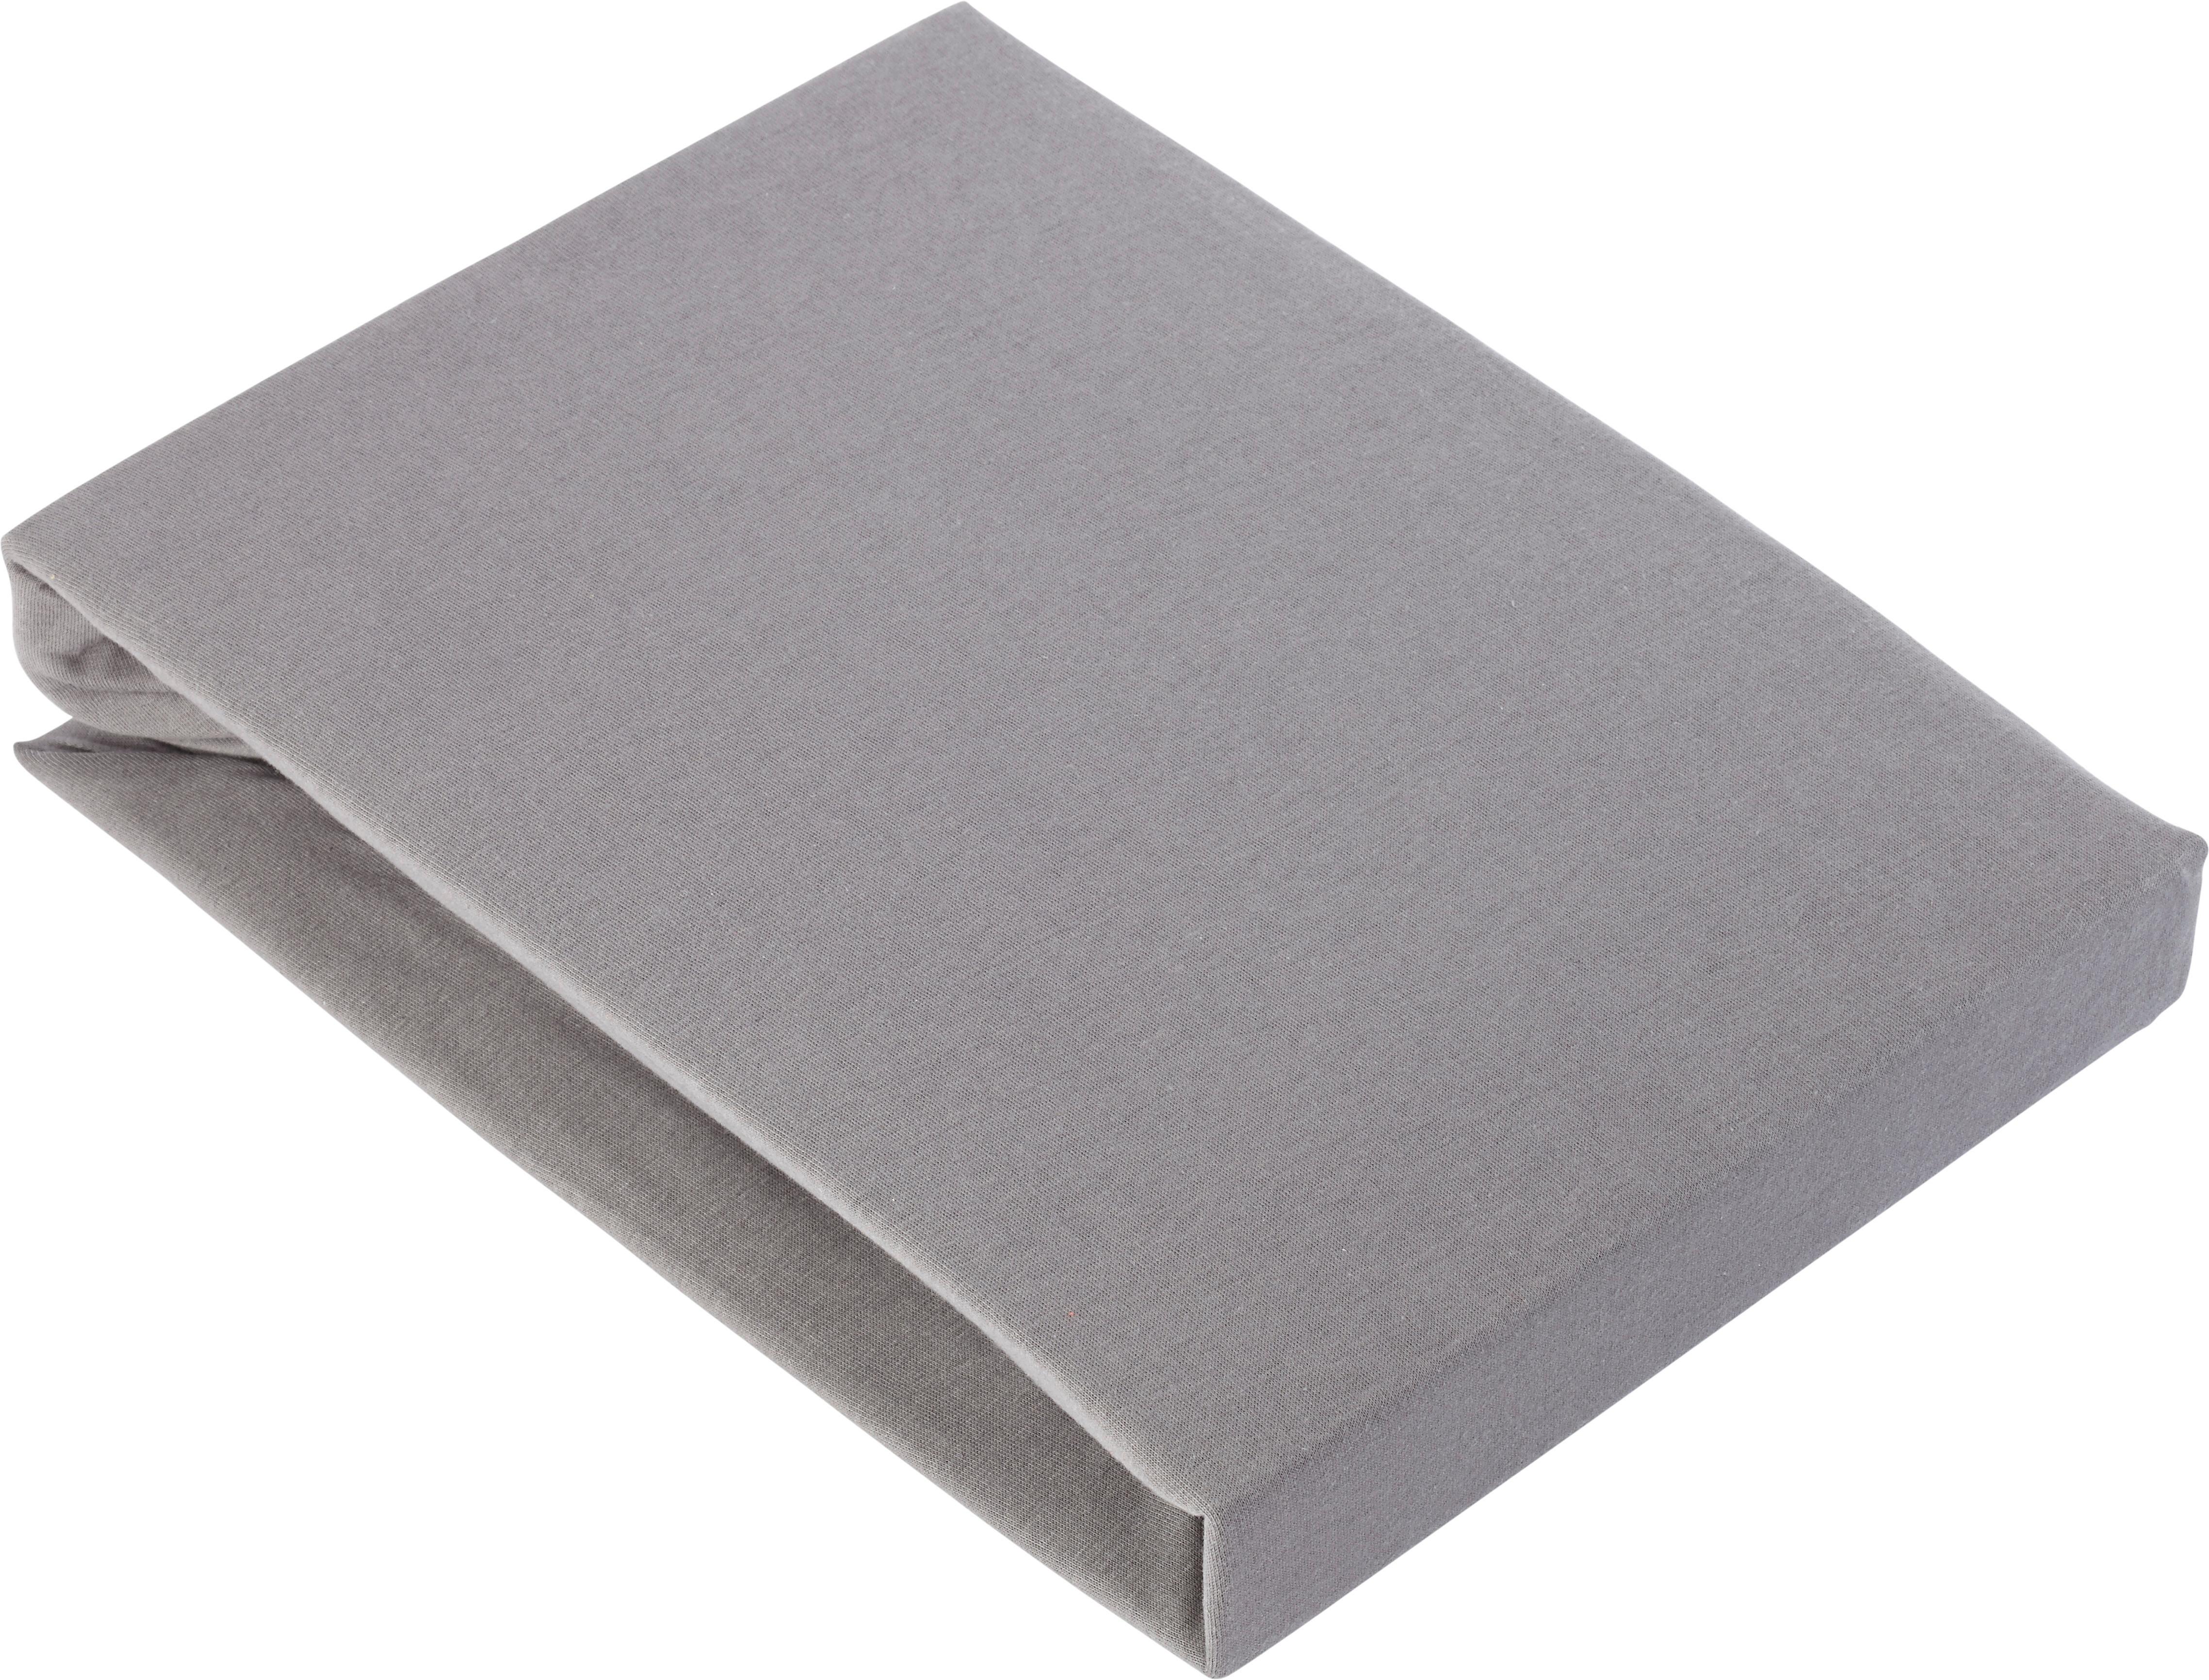 Elastické Prostěradlo Basic, 180/200 Cm - šedá, textil (180/200cm) - Modern Living